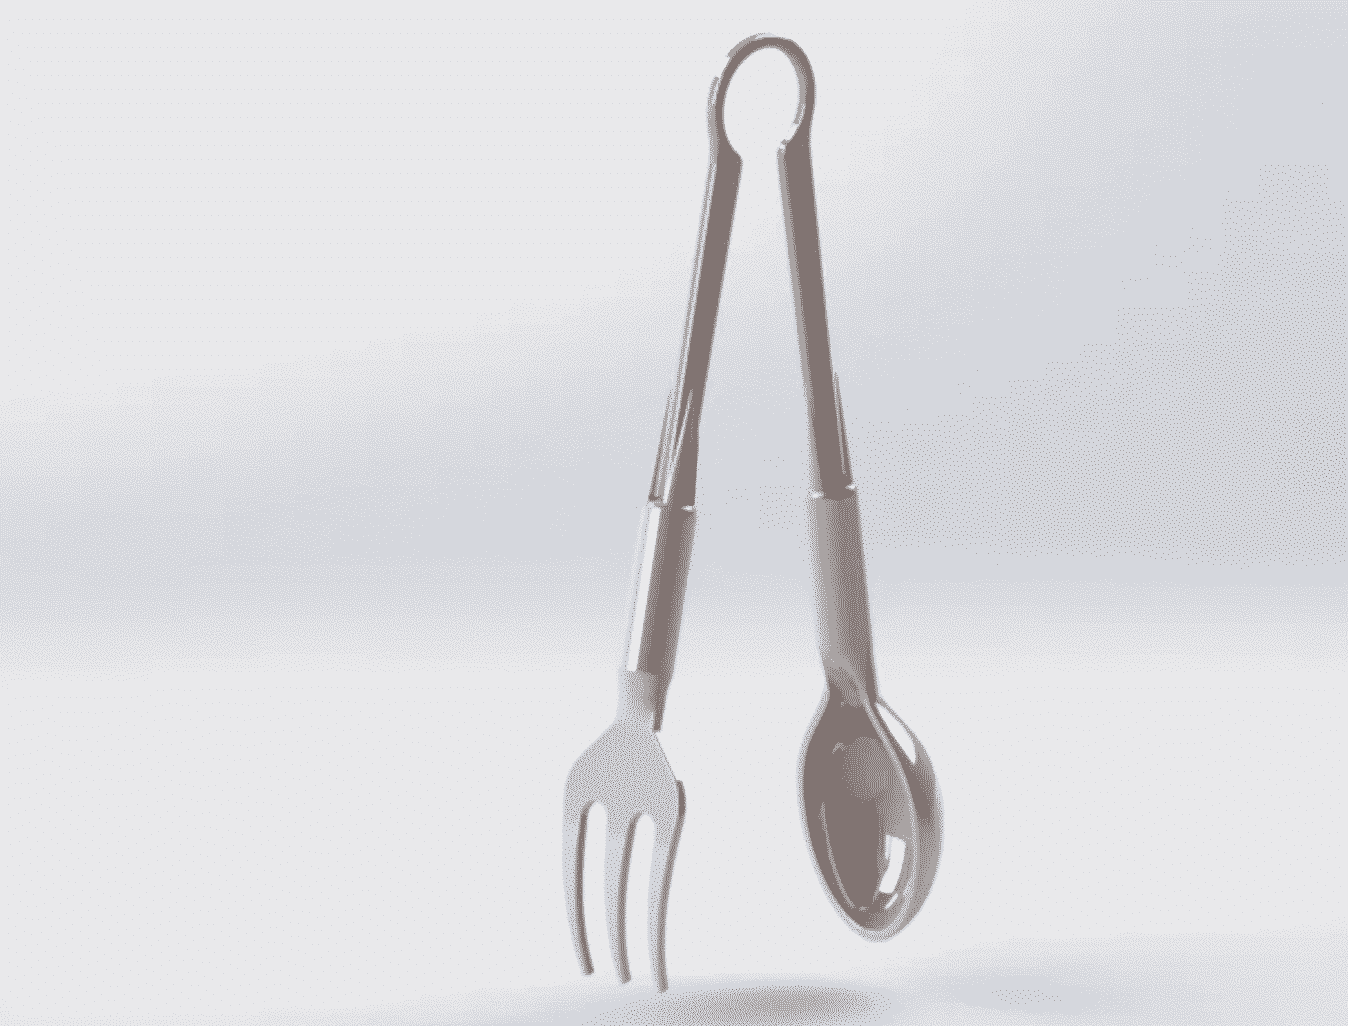 3D printed fork tongs